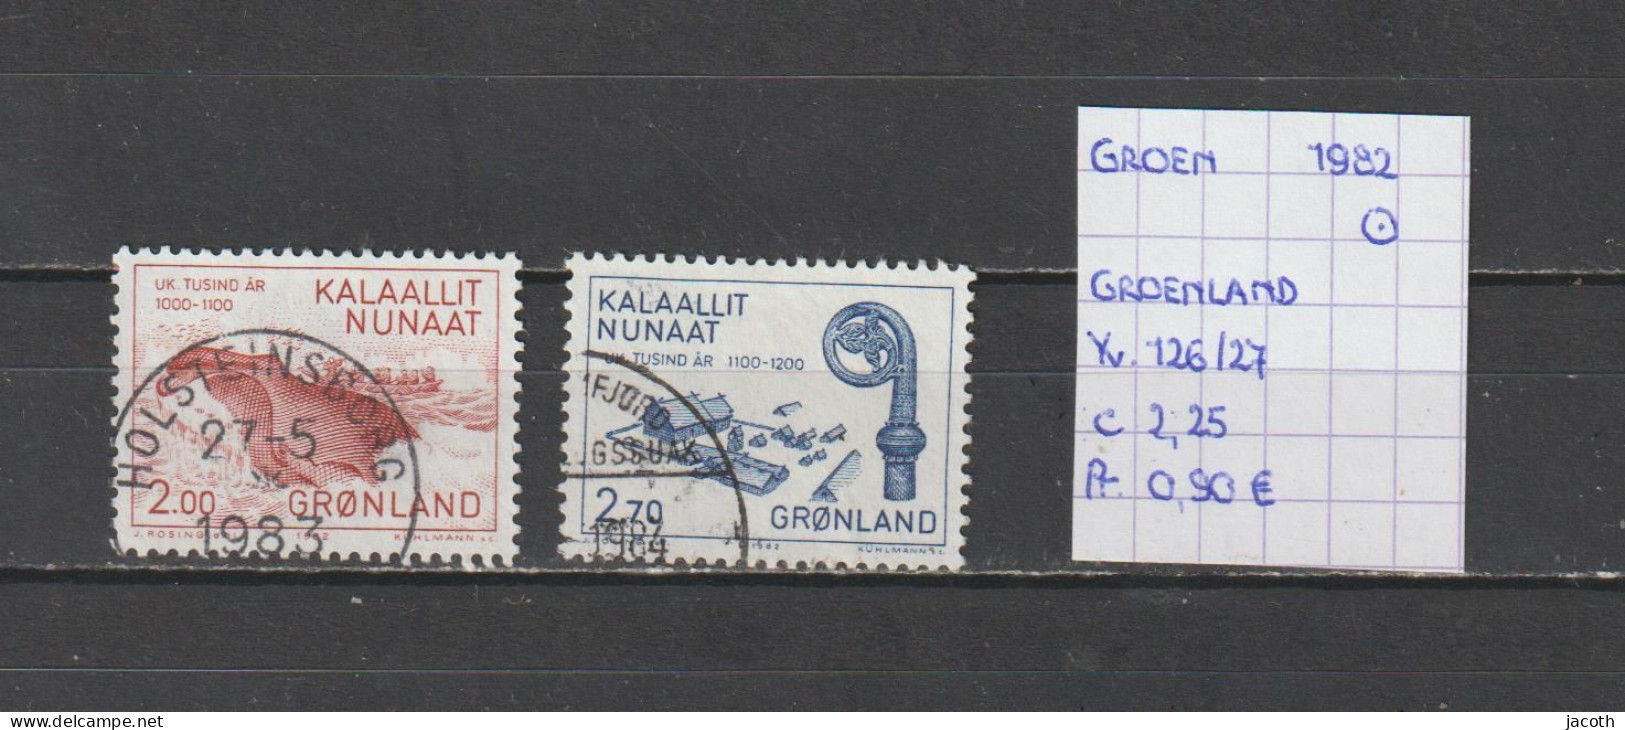 (TJ) Groenland 1982 - YT 126/27 (gest./obl./used) - Gebraucht